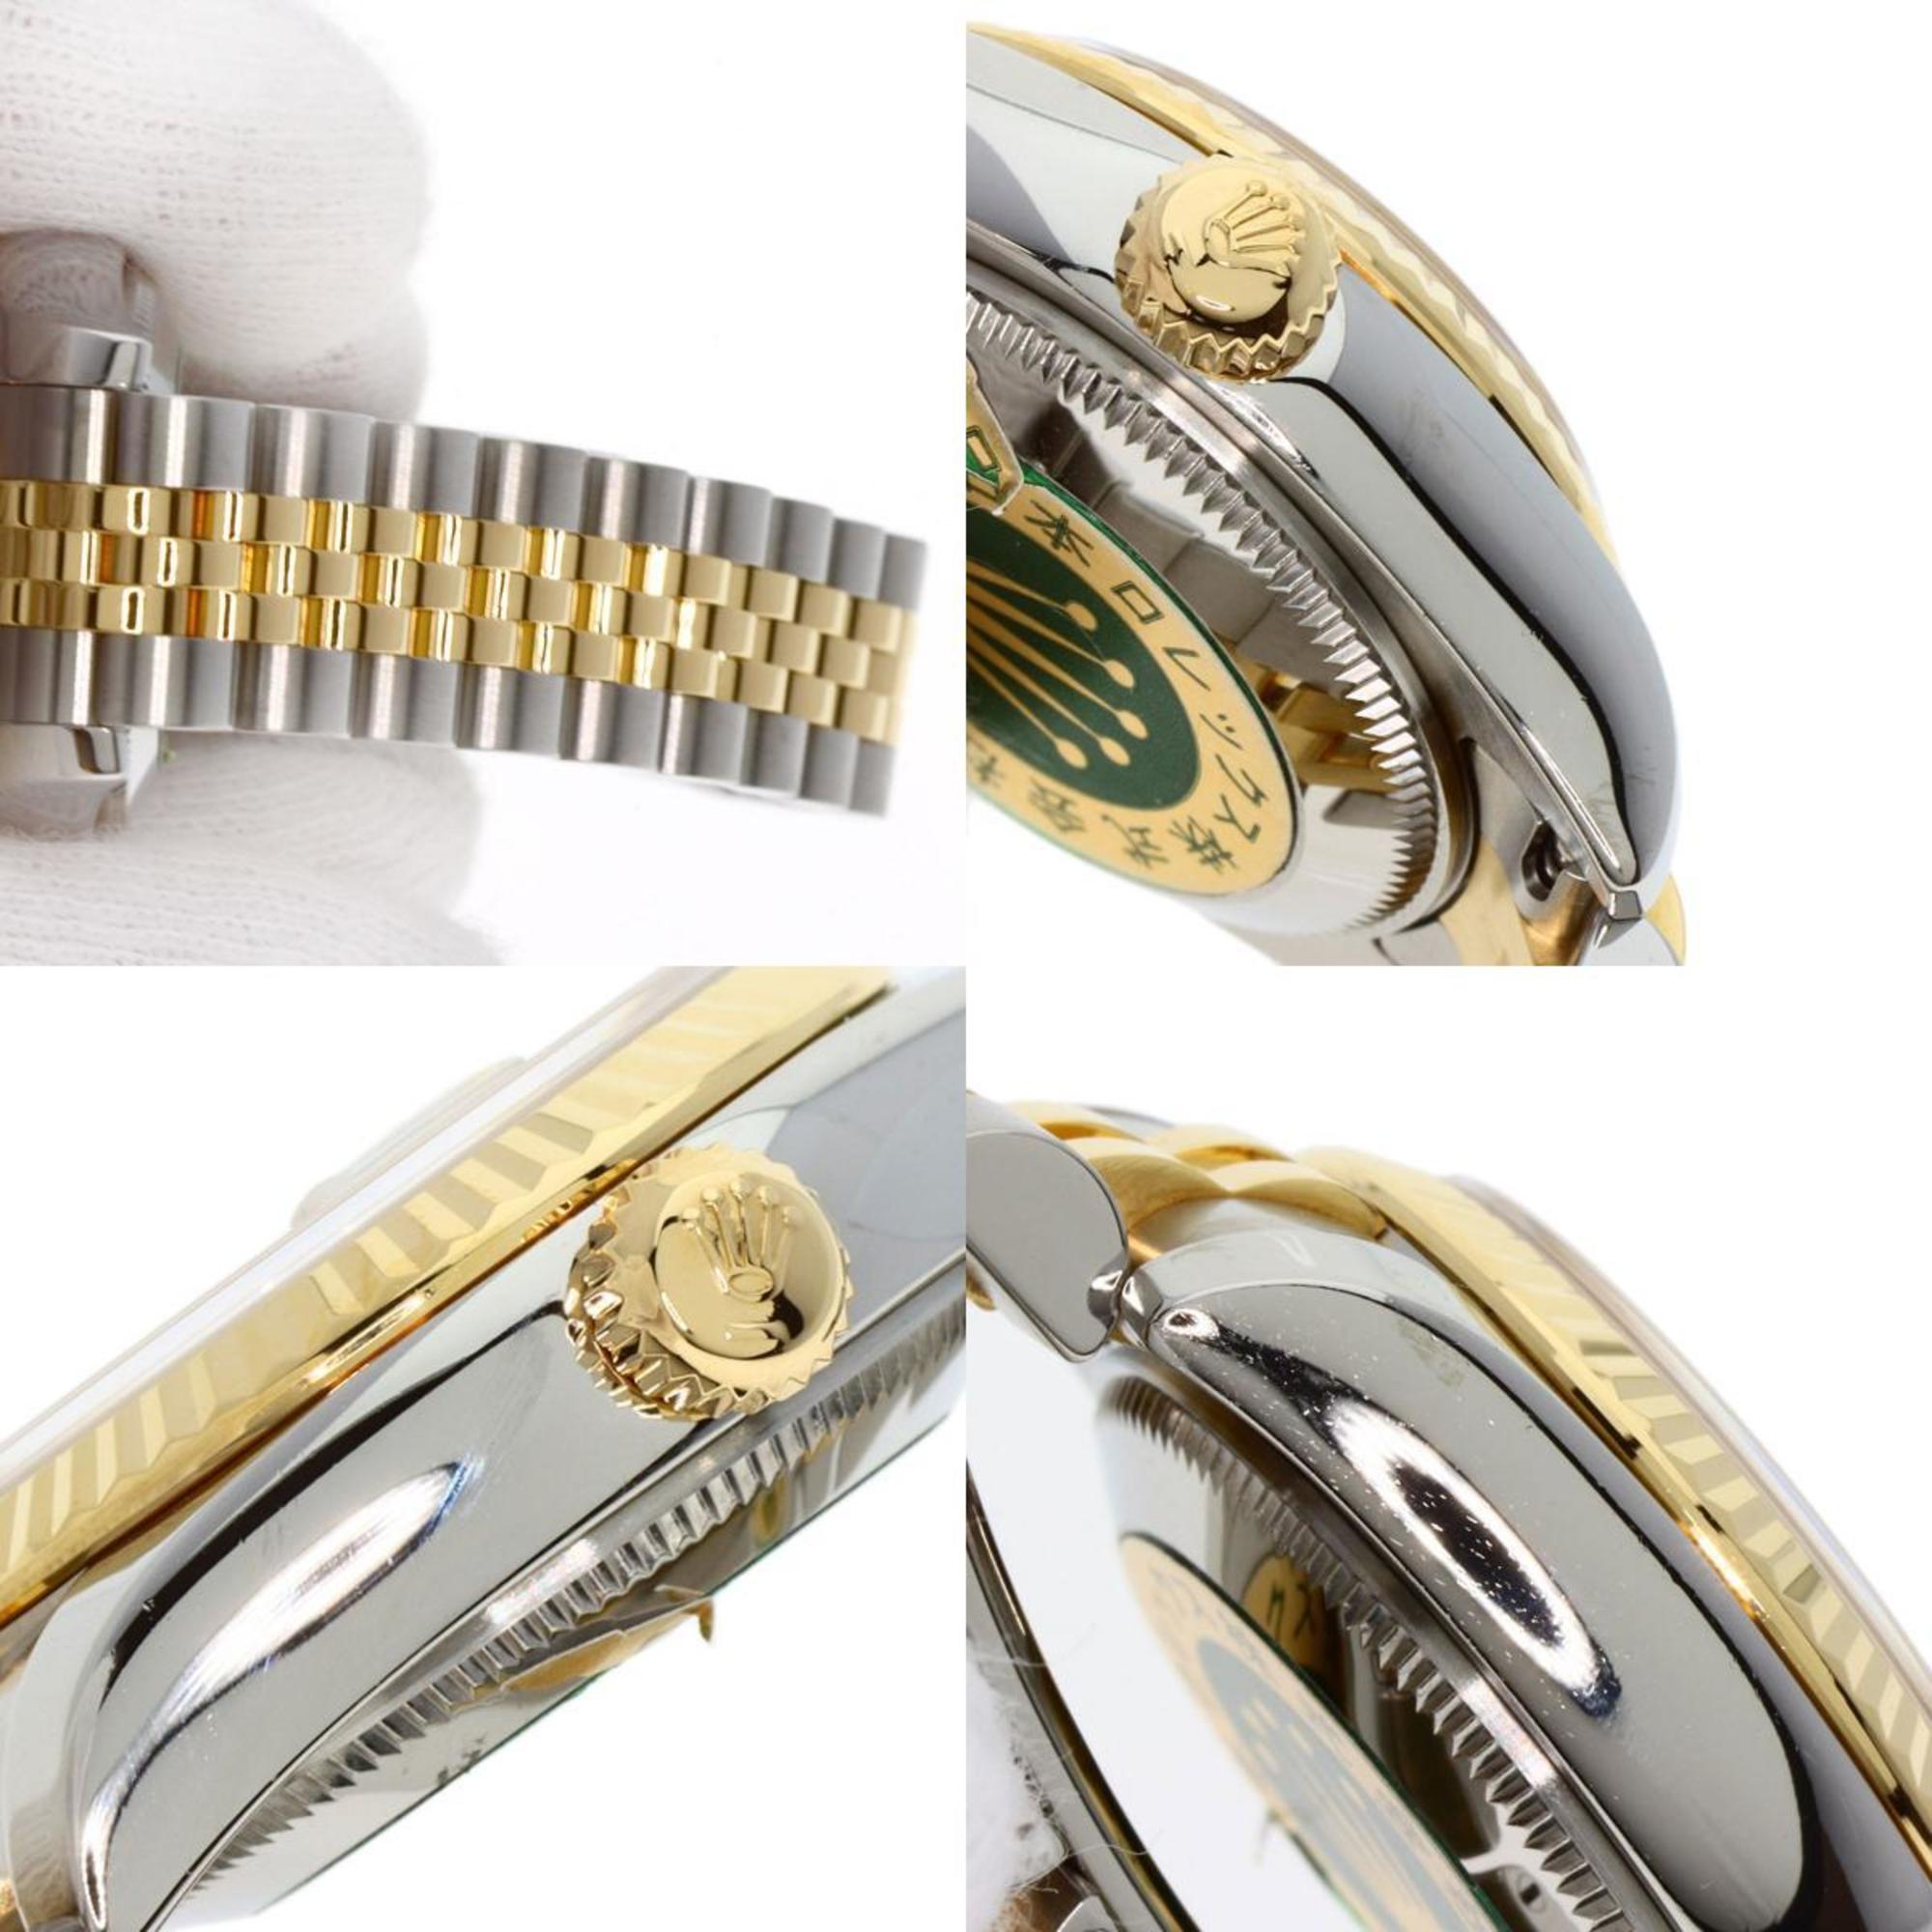 Rolex 179173G Datejust 10P Diamond Watch Stainless Steel SSxK18YG K18YG Women's ROLEX